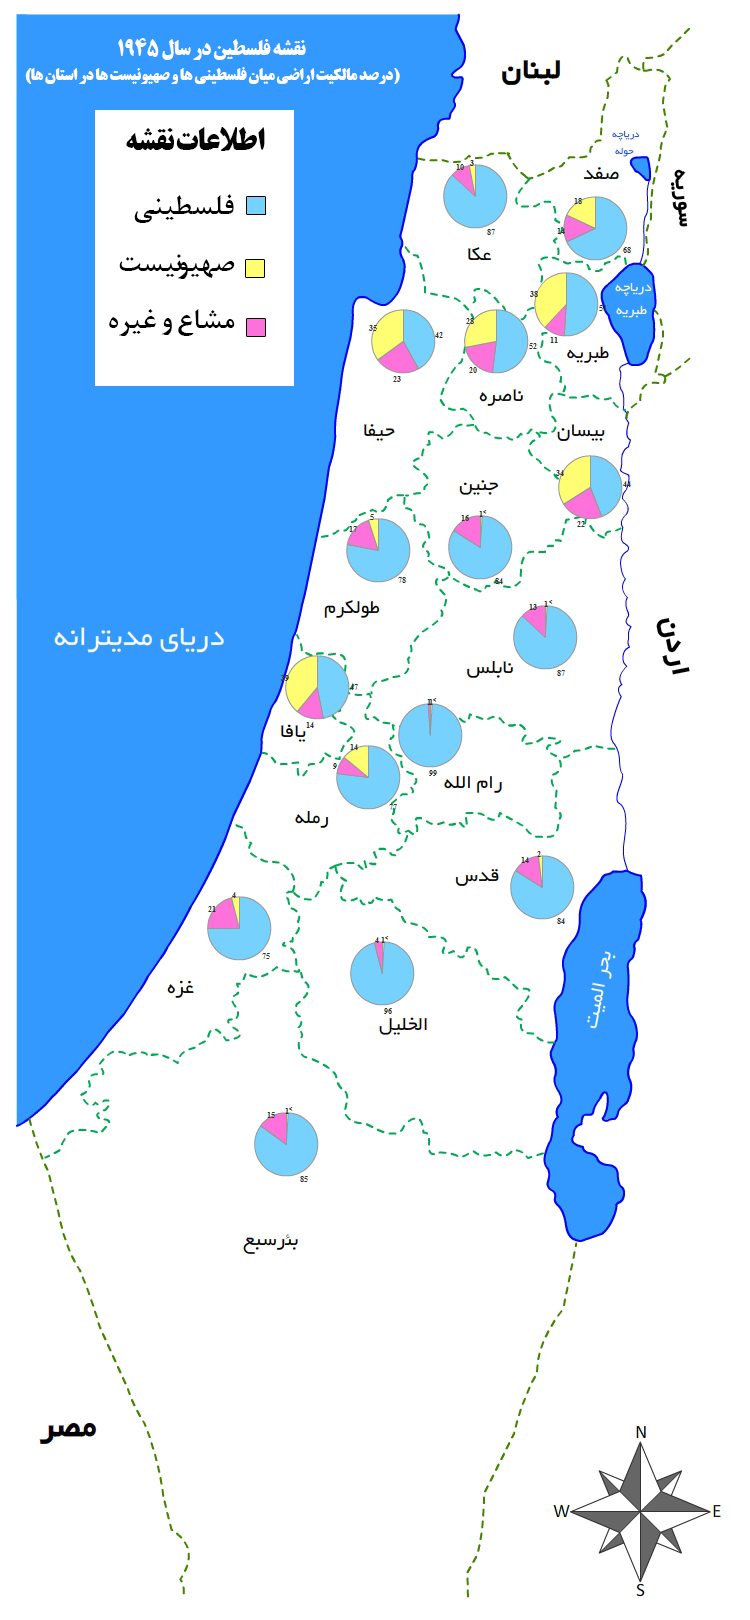 نقشه فلسطین در سال 1945  (درصد مالکیت اراضی میان فلسطینی ها و صهیونیست ها در استان ها)